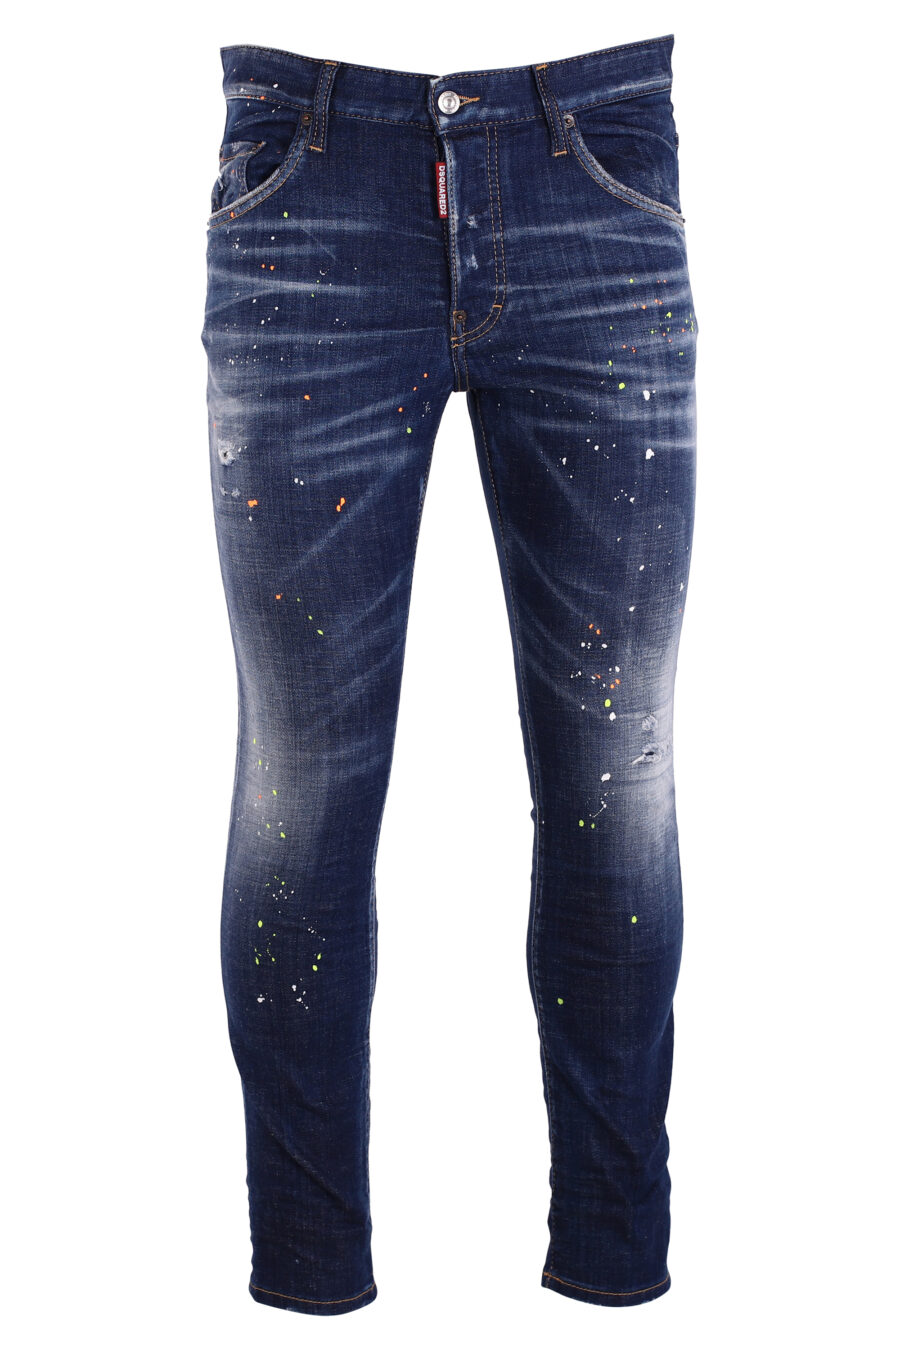 Jeans "Skaterjeans" blau mit weißen Farbspritzern - IMG 8993